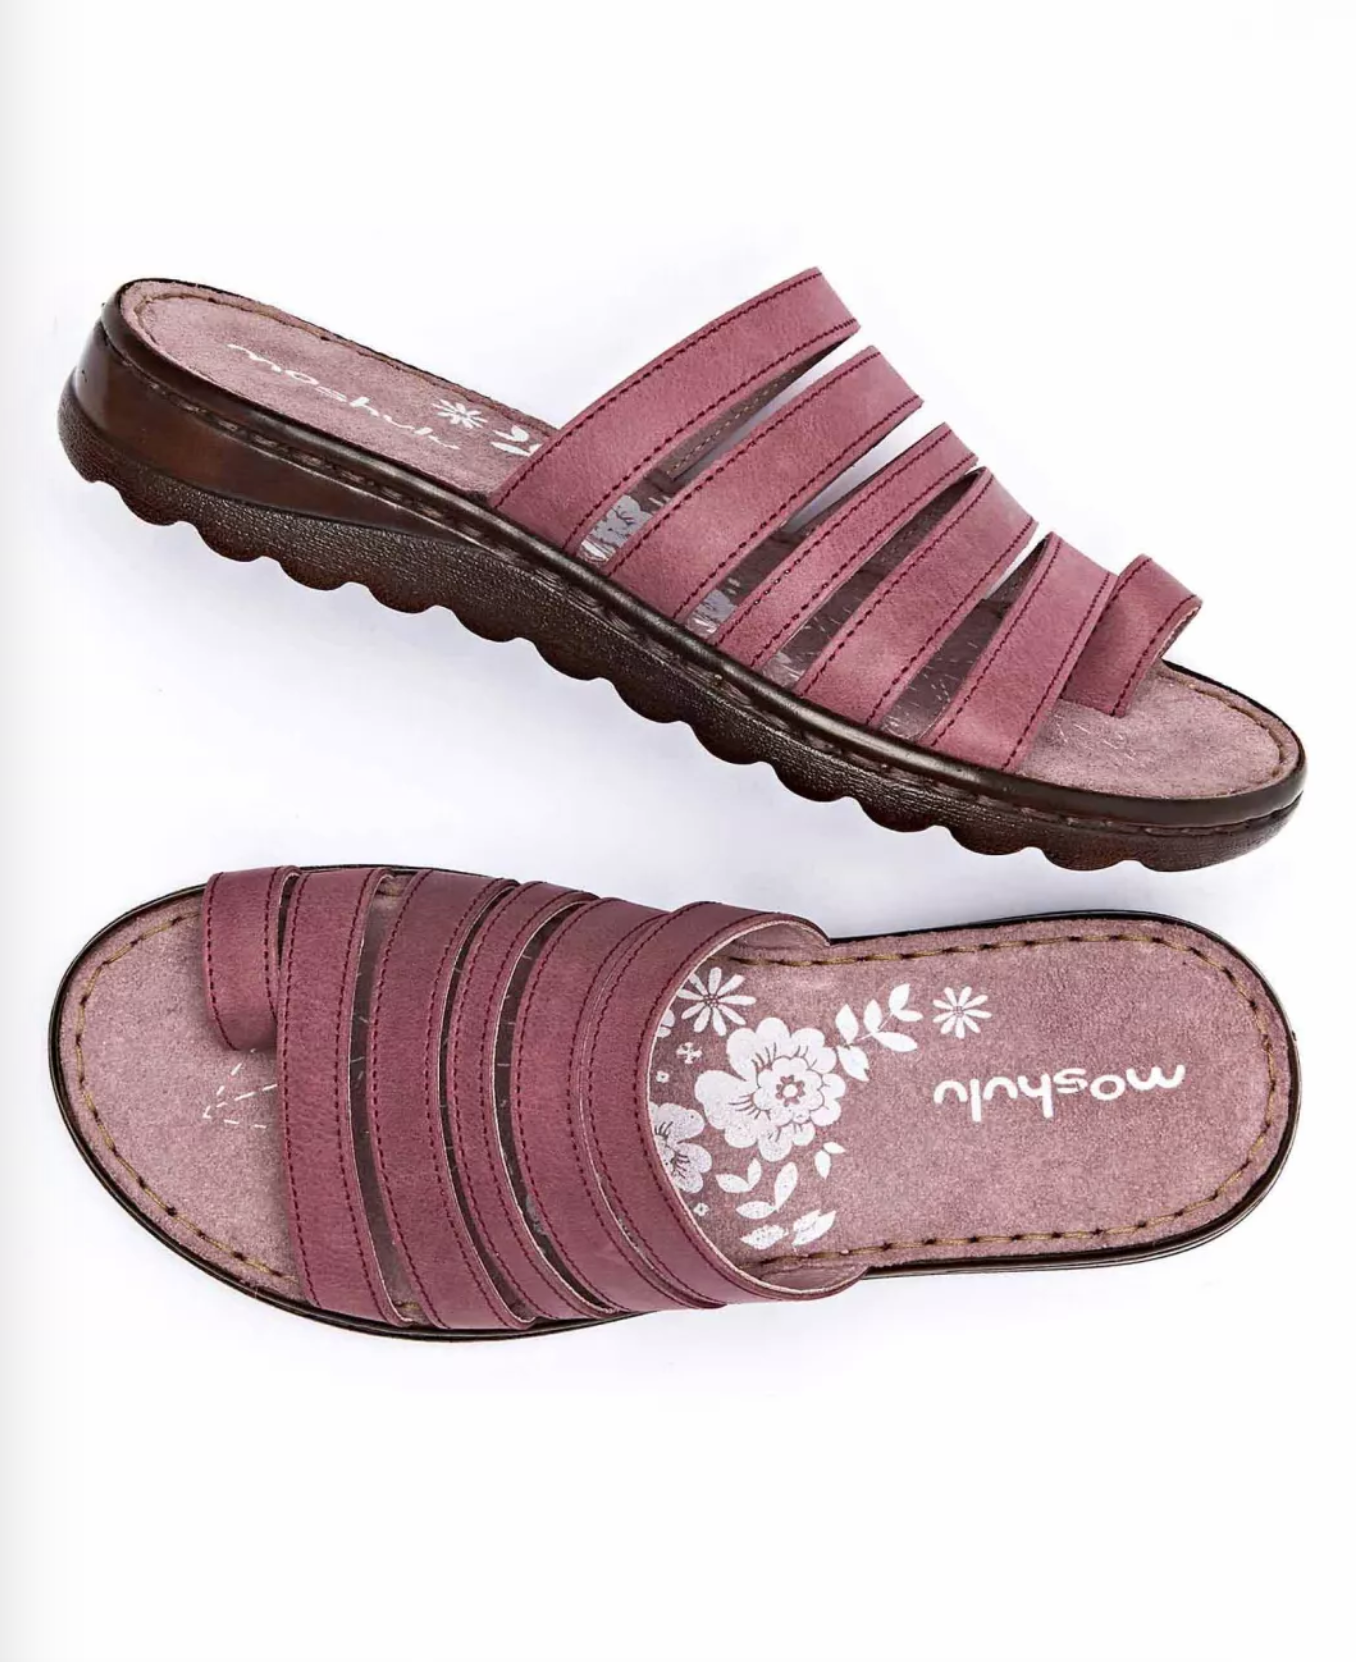 Moshula sandals